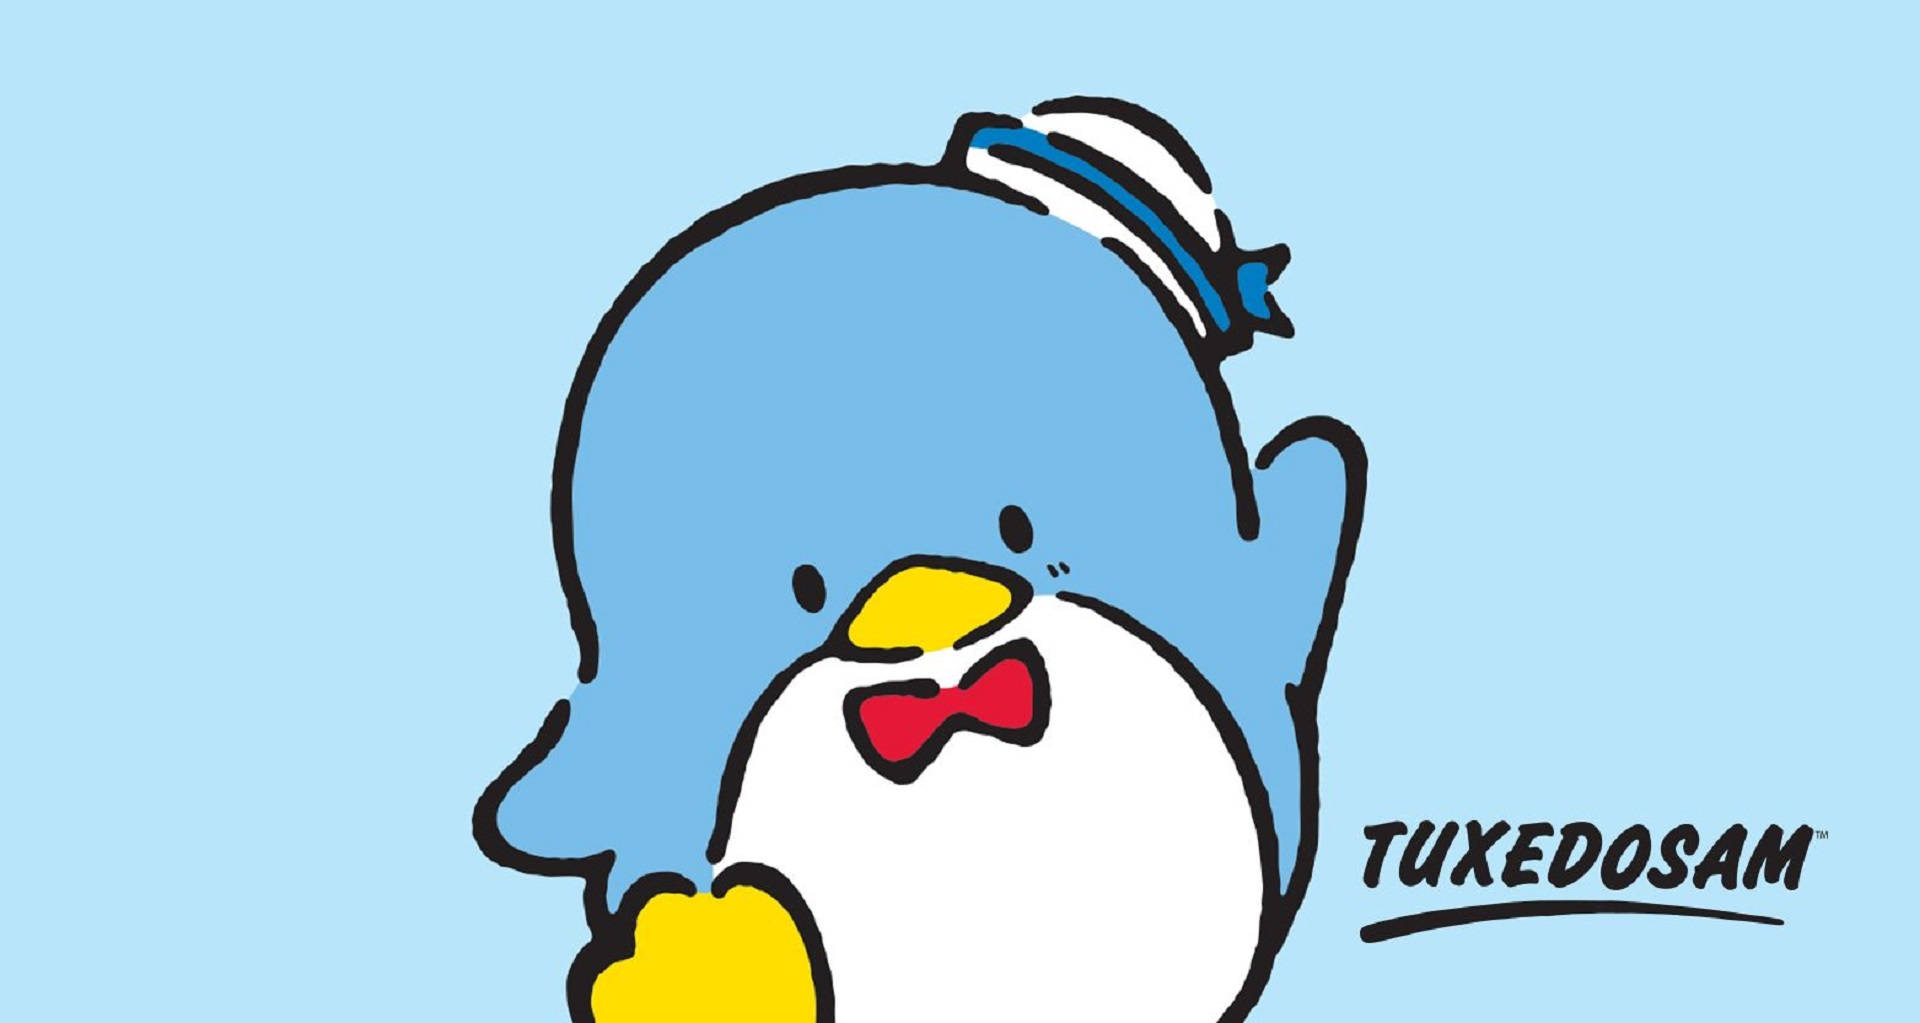 Tuxedo Sam Blue Penguin Sanrio Wallpaper